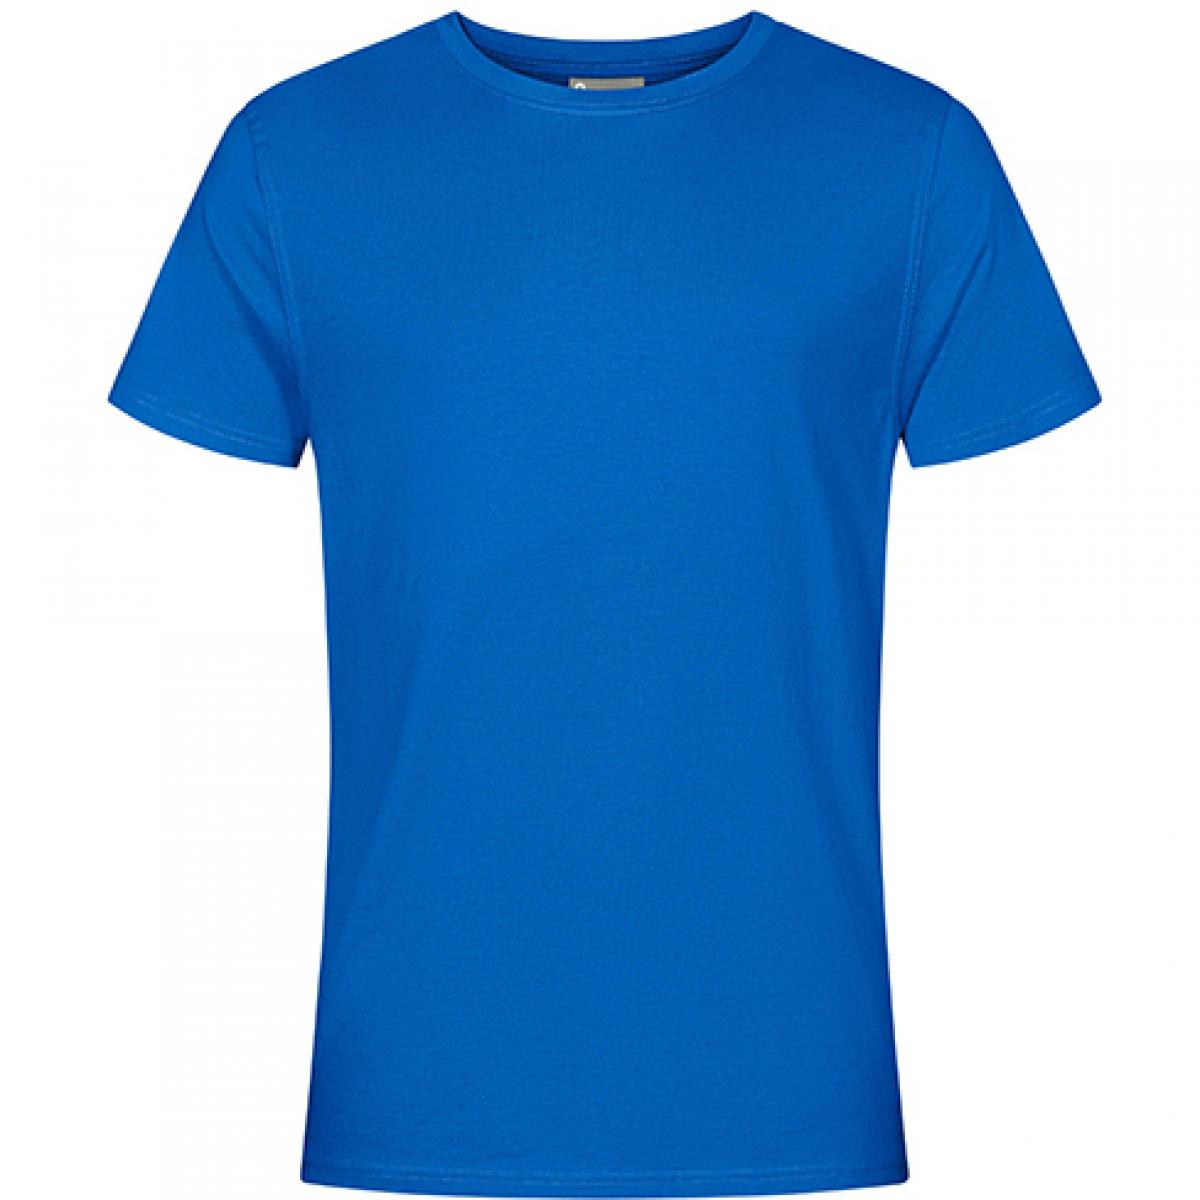 Hersteller: EXCD by Promodoro Herstellernummer: 3077 Artikelbezeichnung: Herren T-Shirt, Single-Jersey Farbe: Cobalt Blue